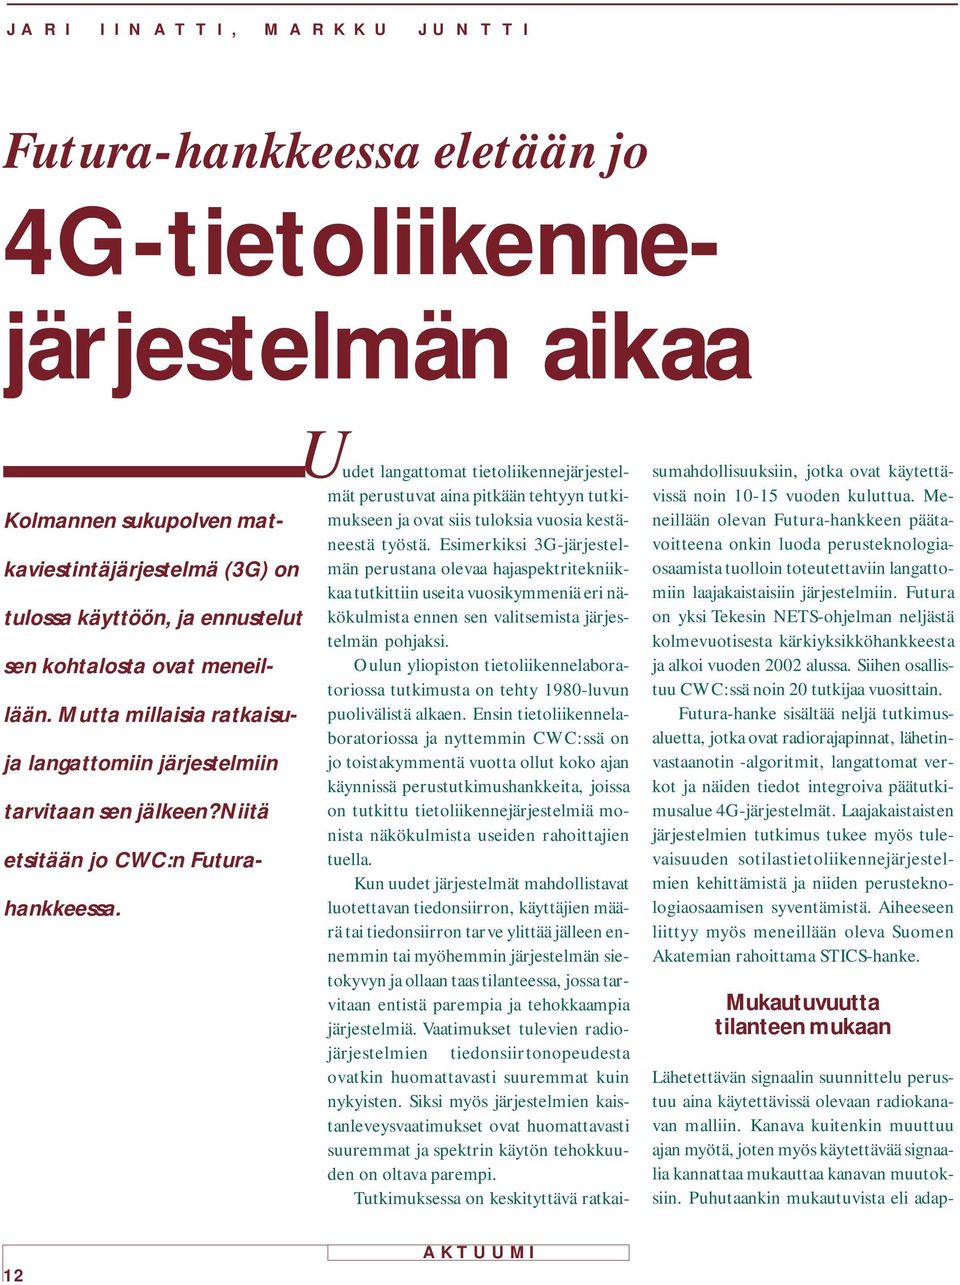 Oulun yliopiston tietoliikennelaboratoriossa tutkimusta on tehty 1980-luvun puolivälistä alkaen.